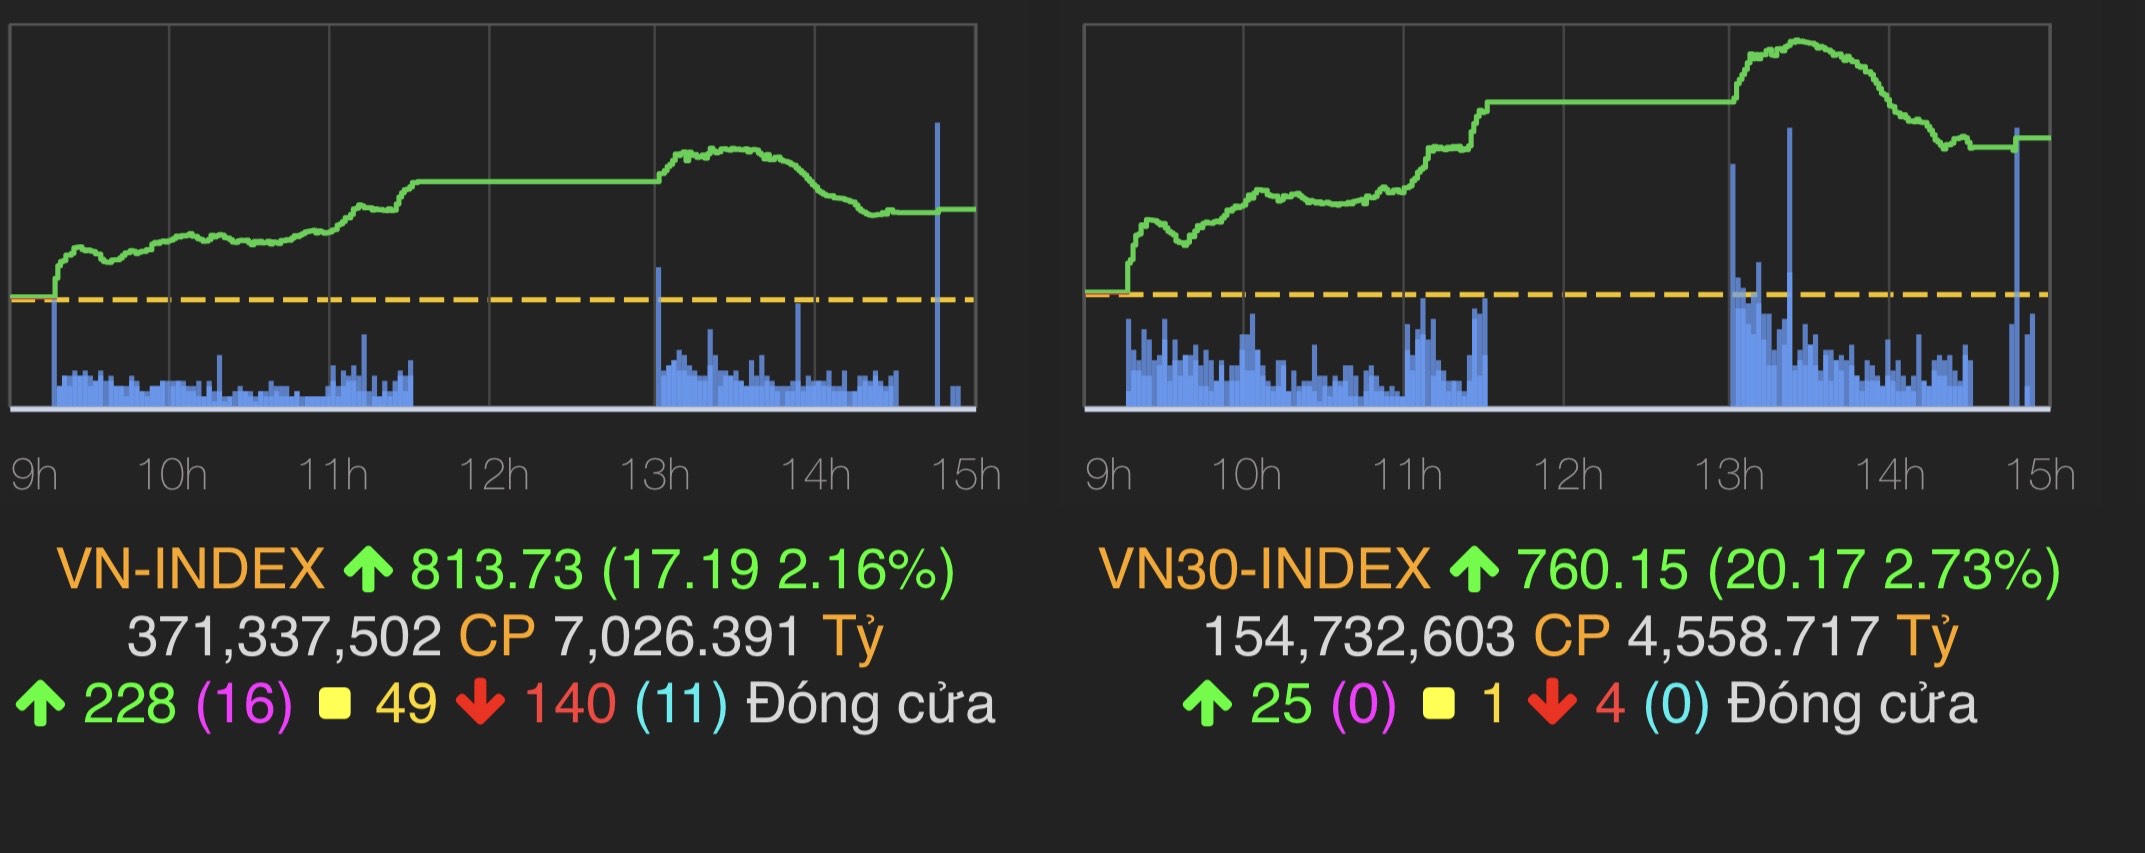 Ảnh: VN-Index tăng 17,19 điểm (2,16%) lên 813,73 điểm